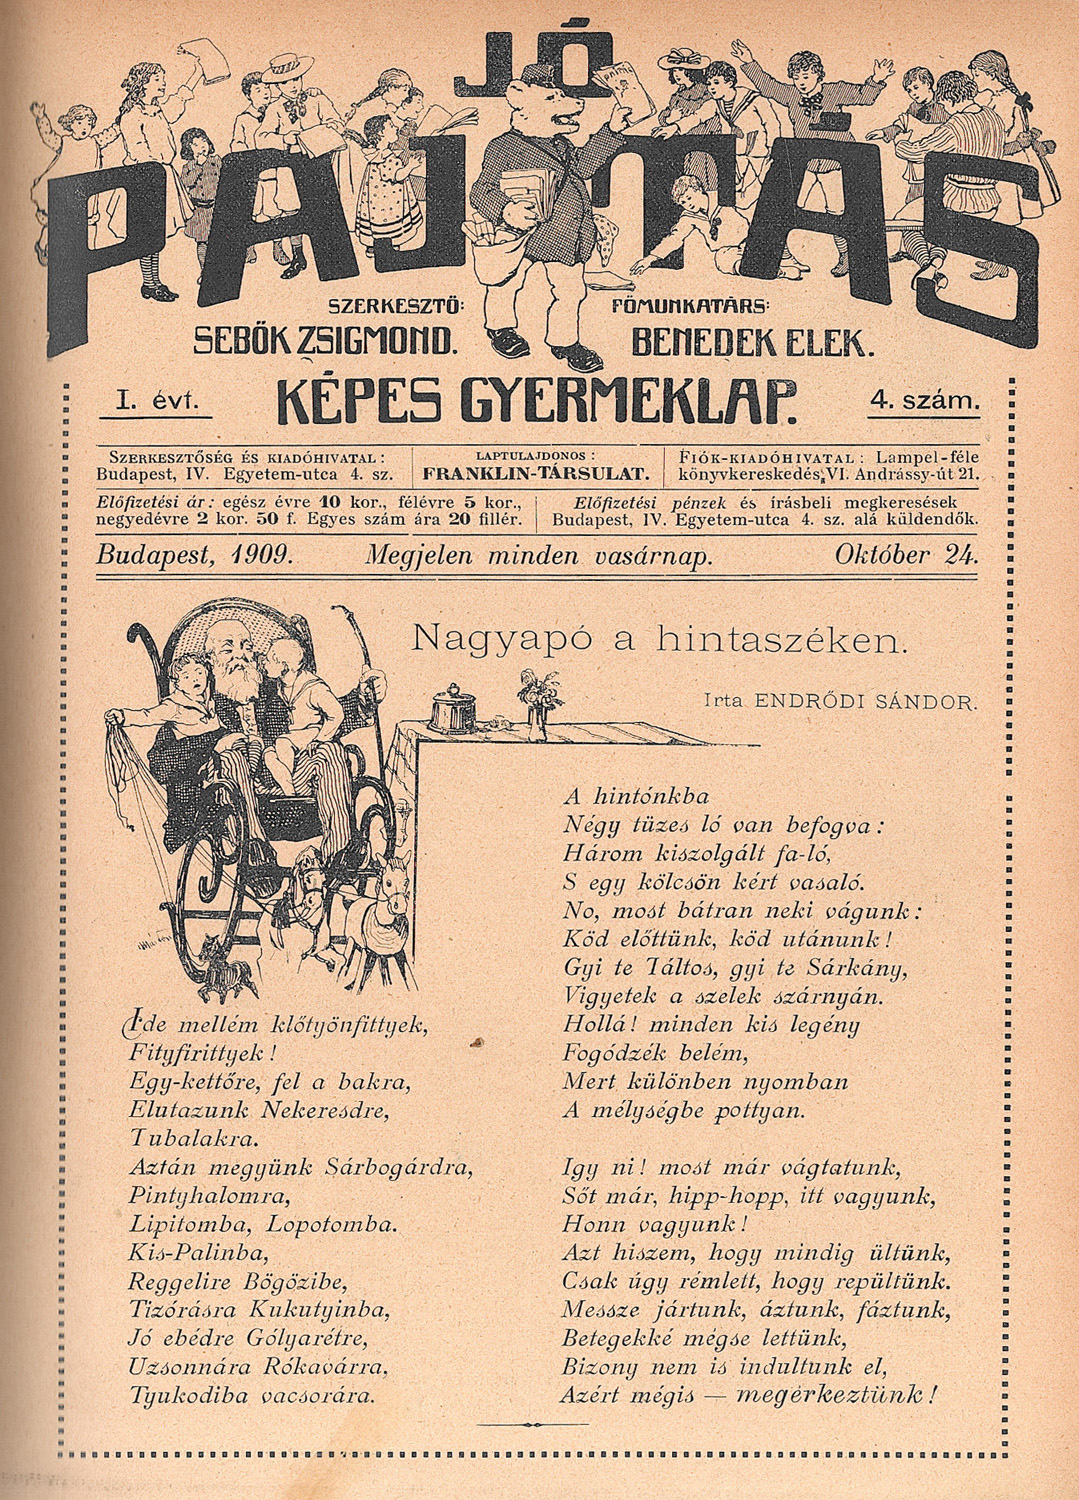 Jó Pajtás. Képes gyermeklap, 1909. (I. évf.)